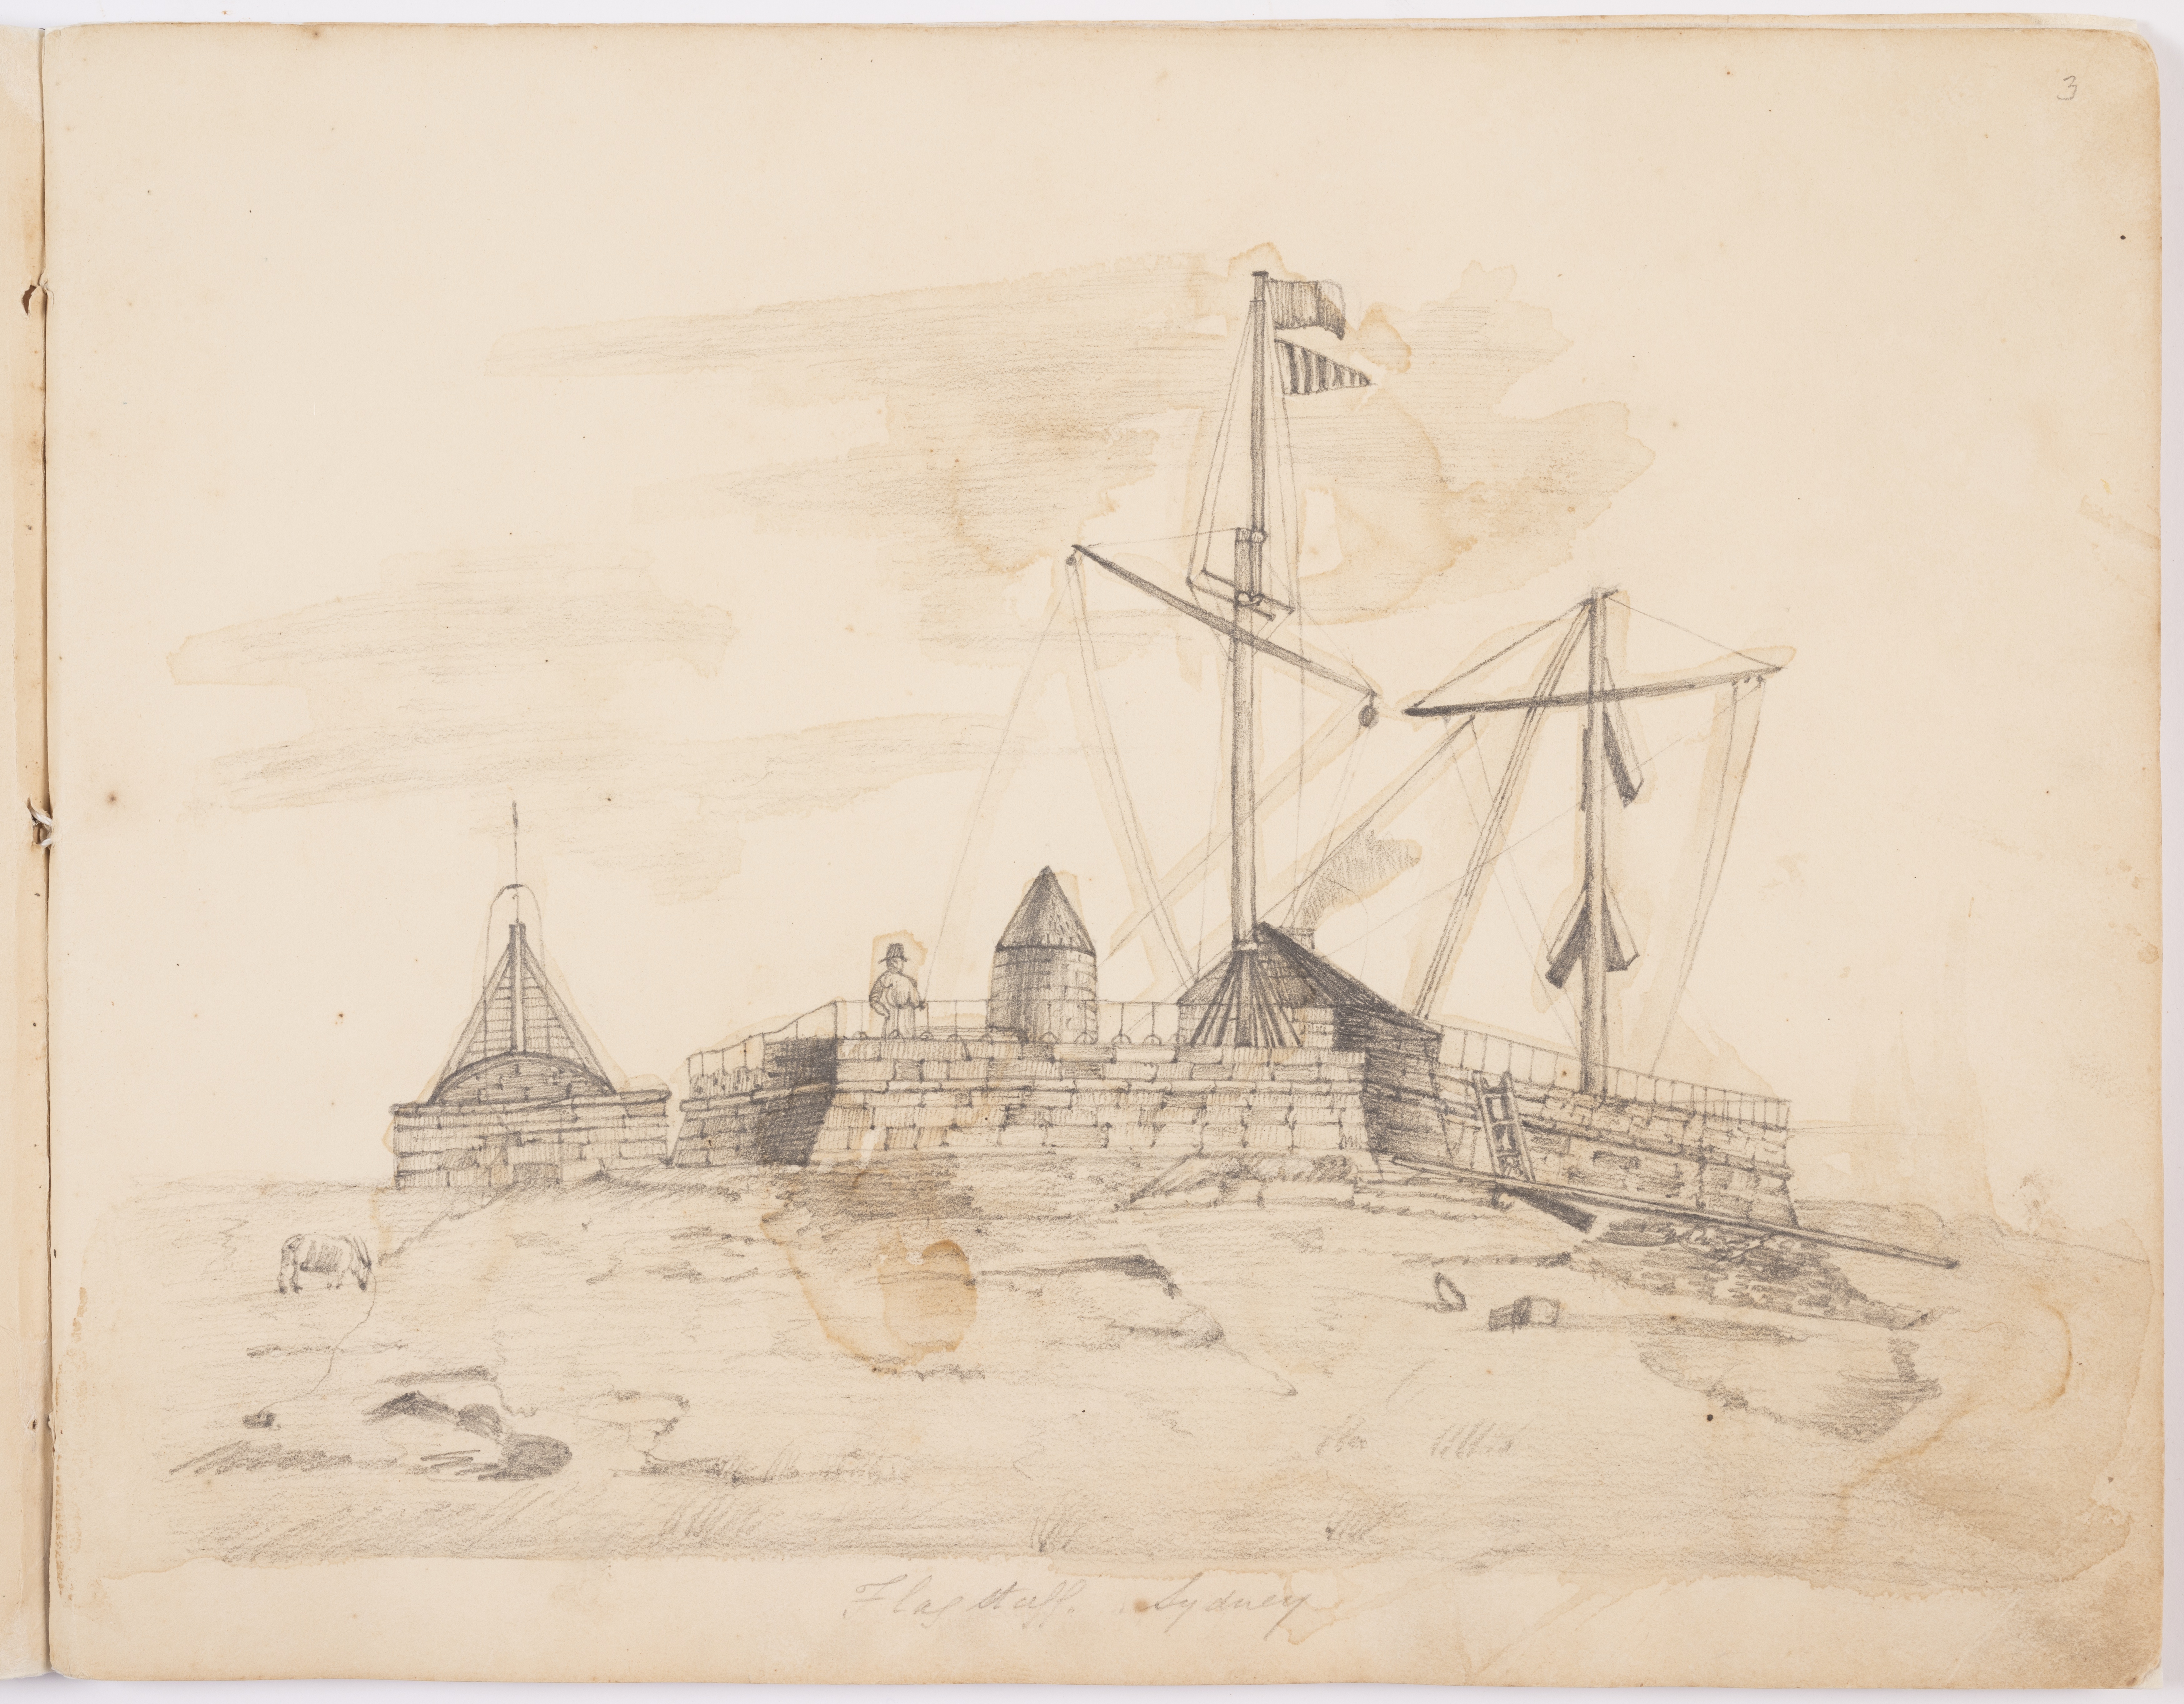 Fort Phillip, Flagstaff Hill, Sydney, ca. 1841